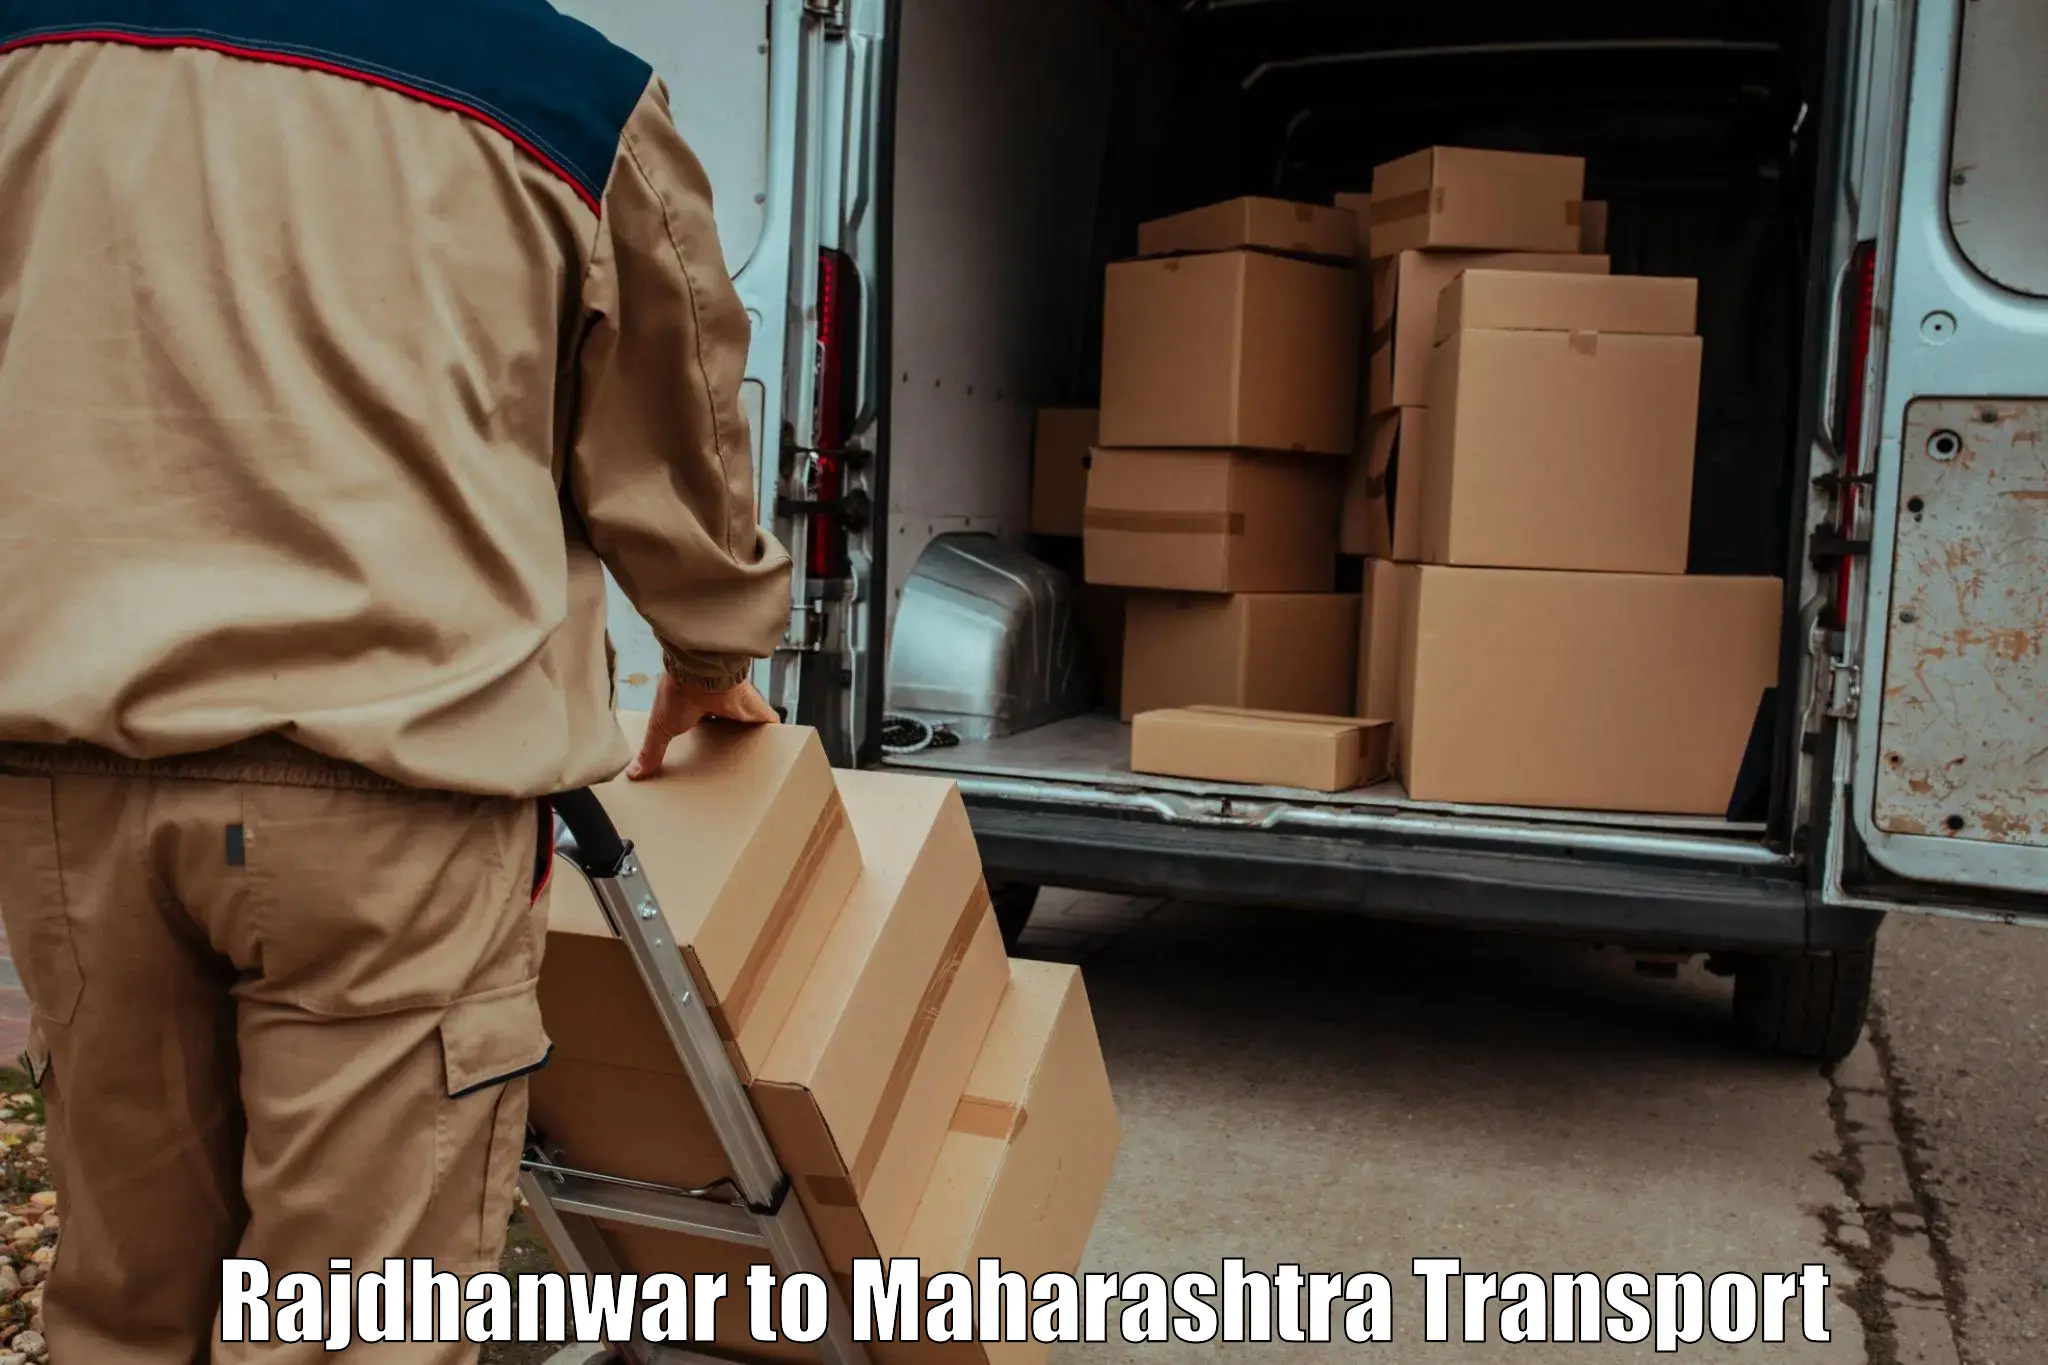 Furniture transport service Rajdhanwar to Lonikand